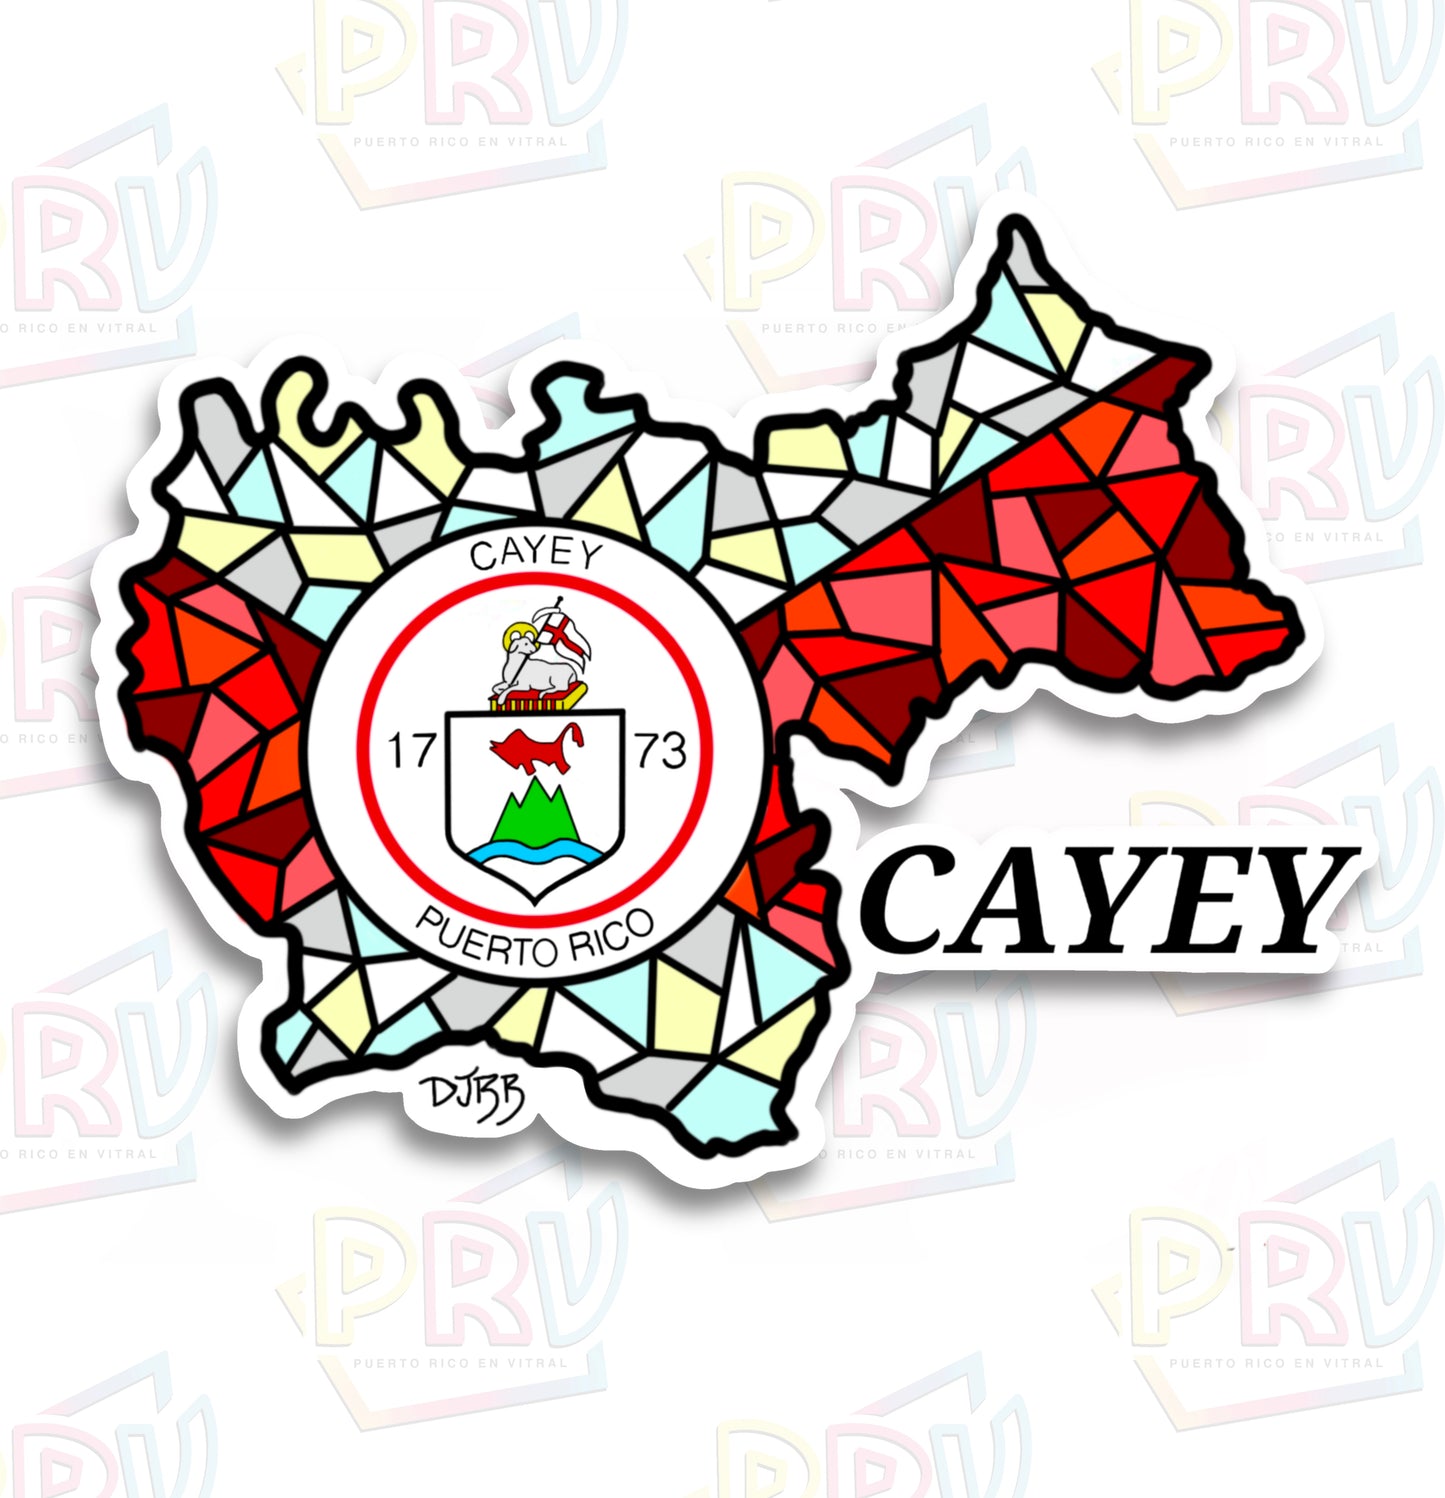 Cayey PR (Sticker)